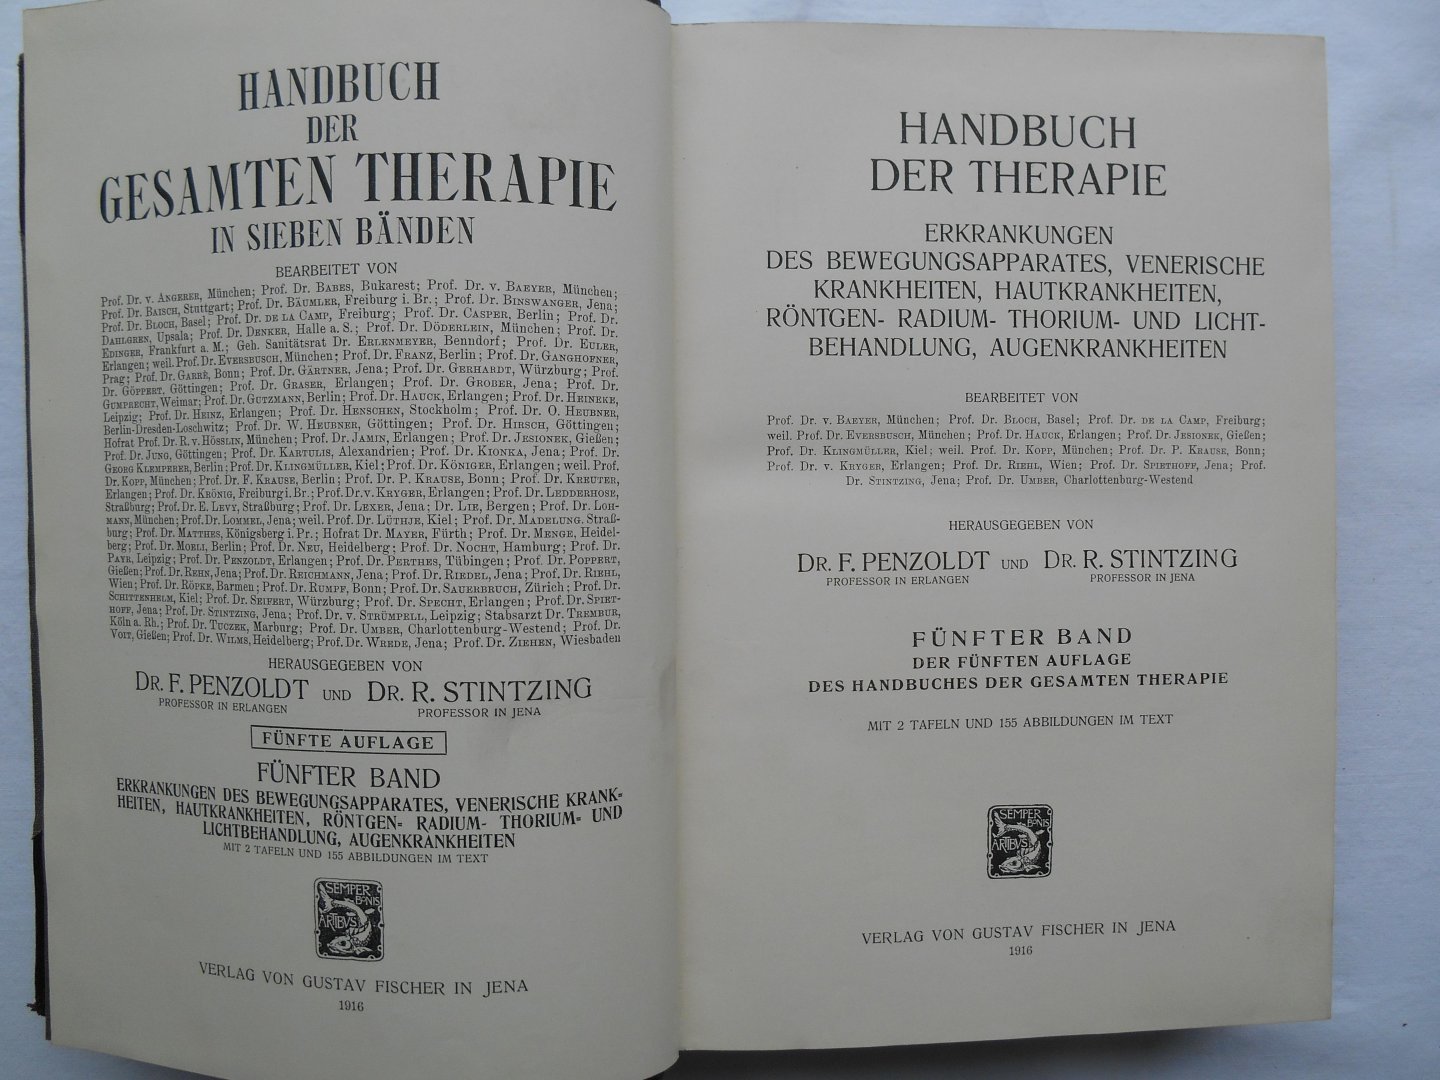 Penzoldt, F. & Stintzing, R. (Hrsg.) - Handbuch der gesamten Therapie. 5.Band